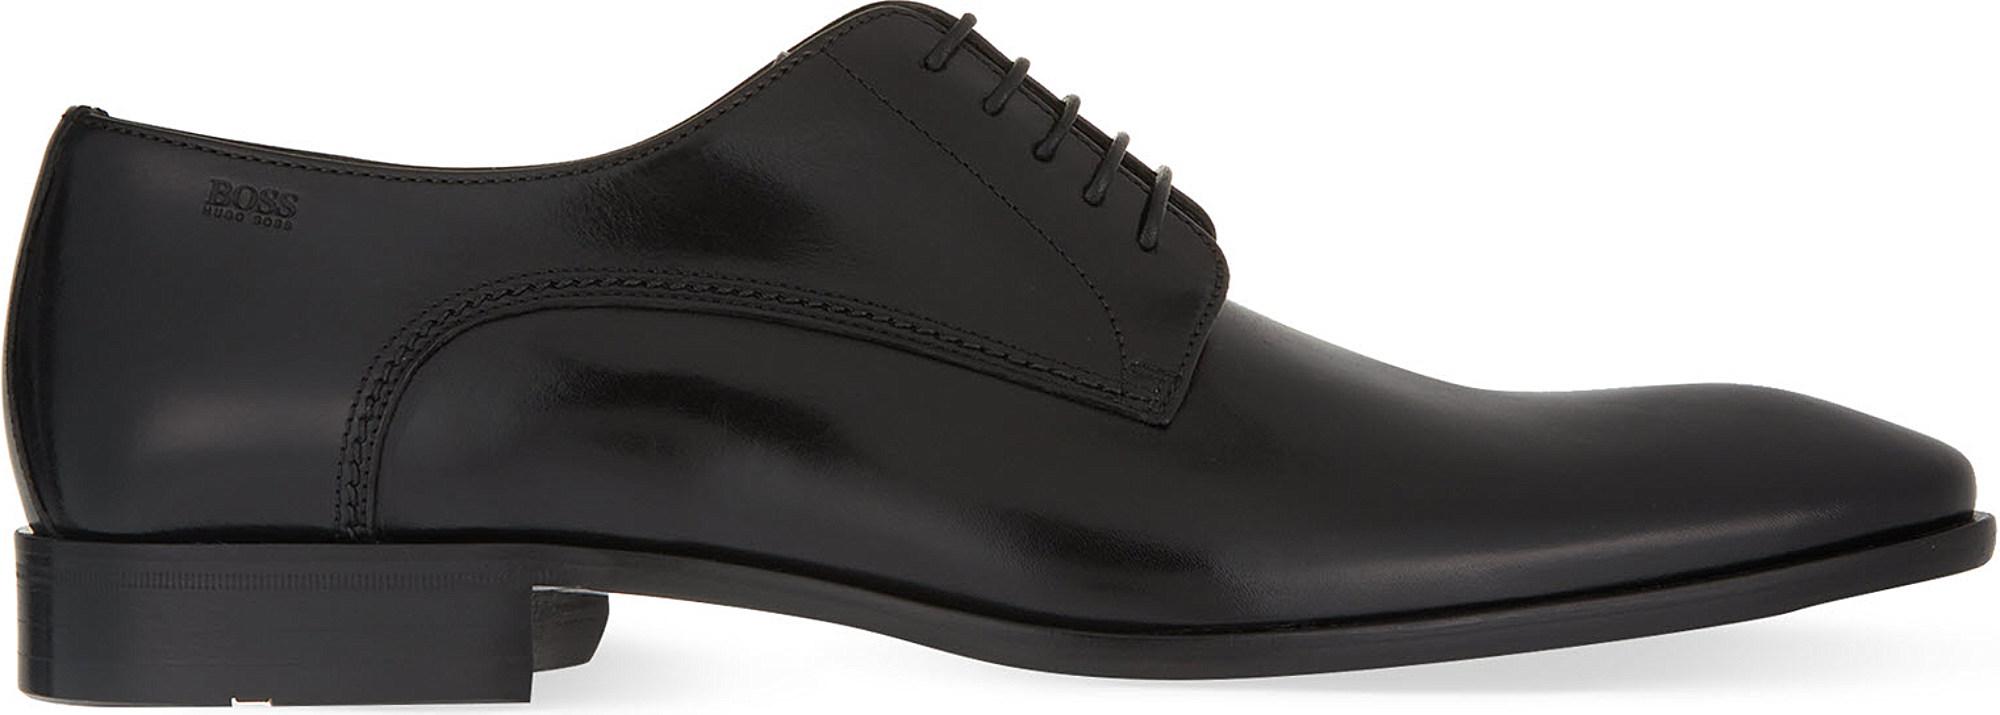 BOSS Hugo Nos Carmons Derby Shoes in Black for Men - Lyst